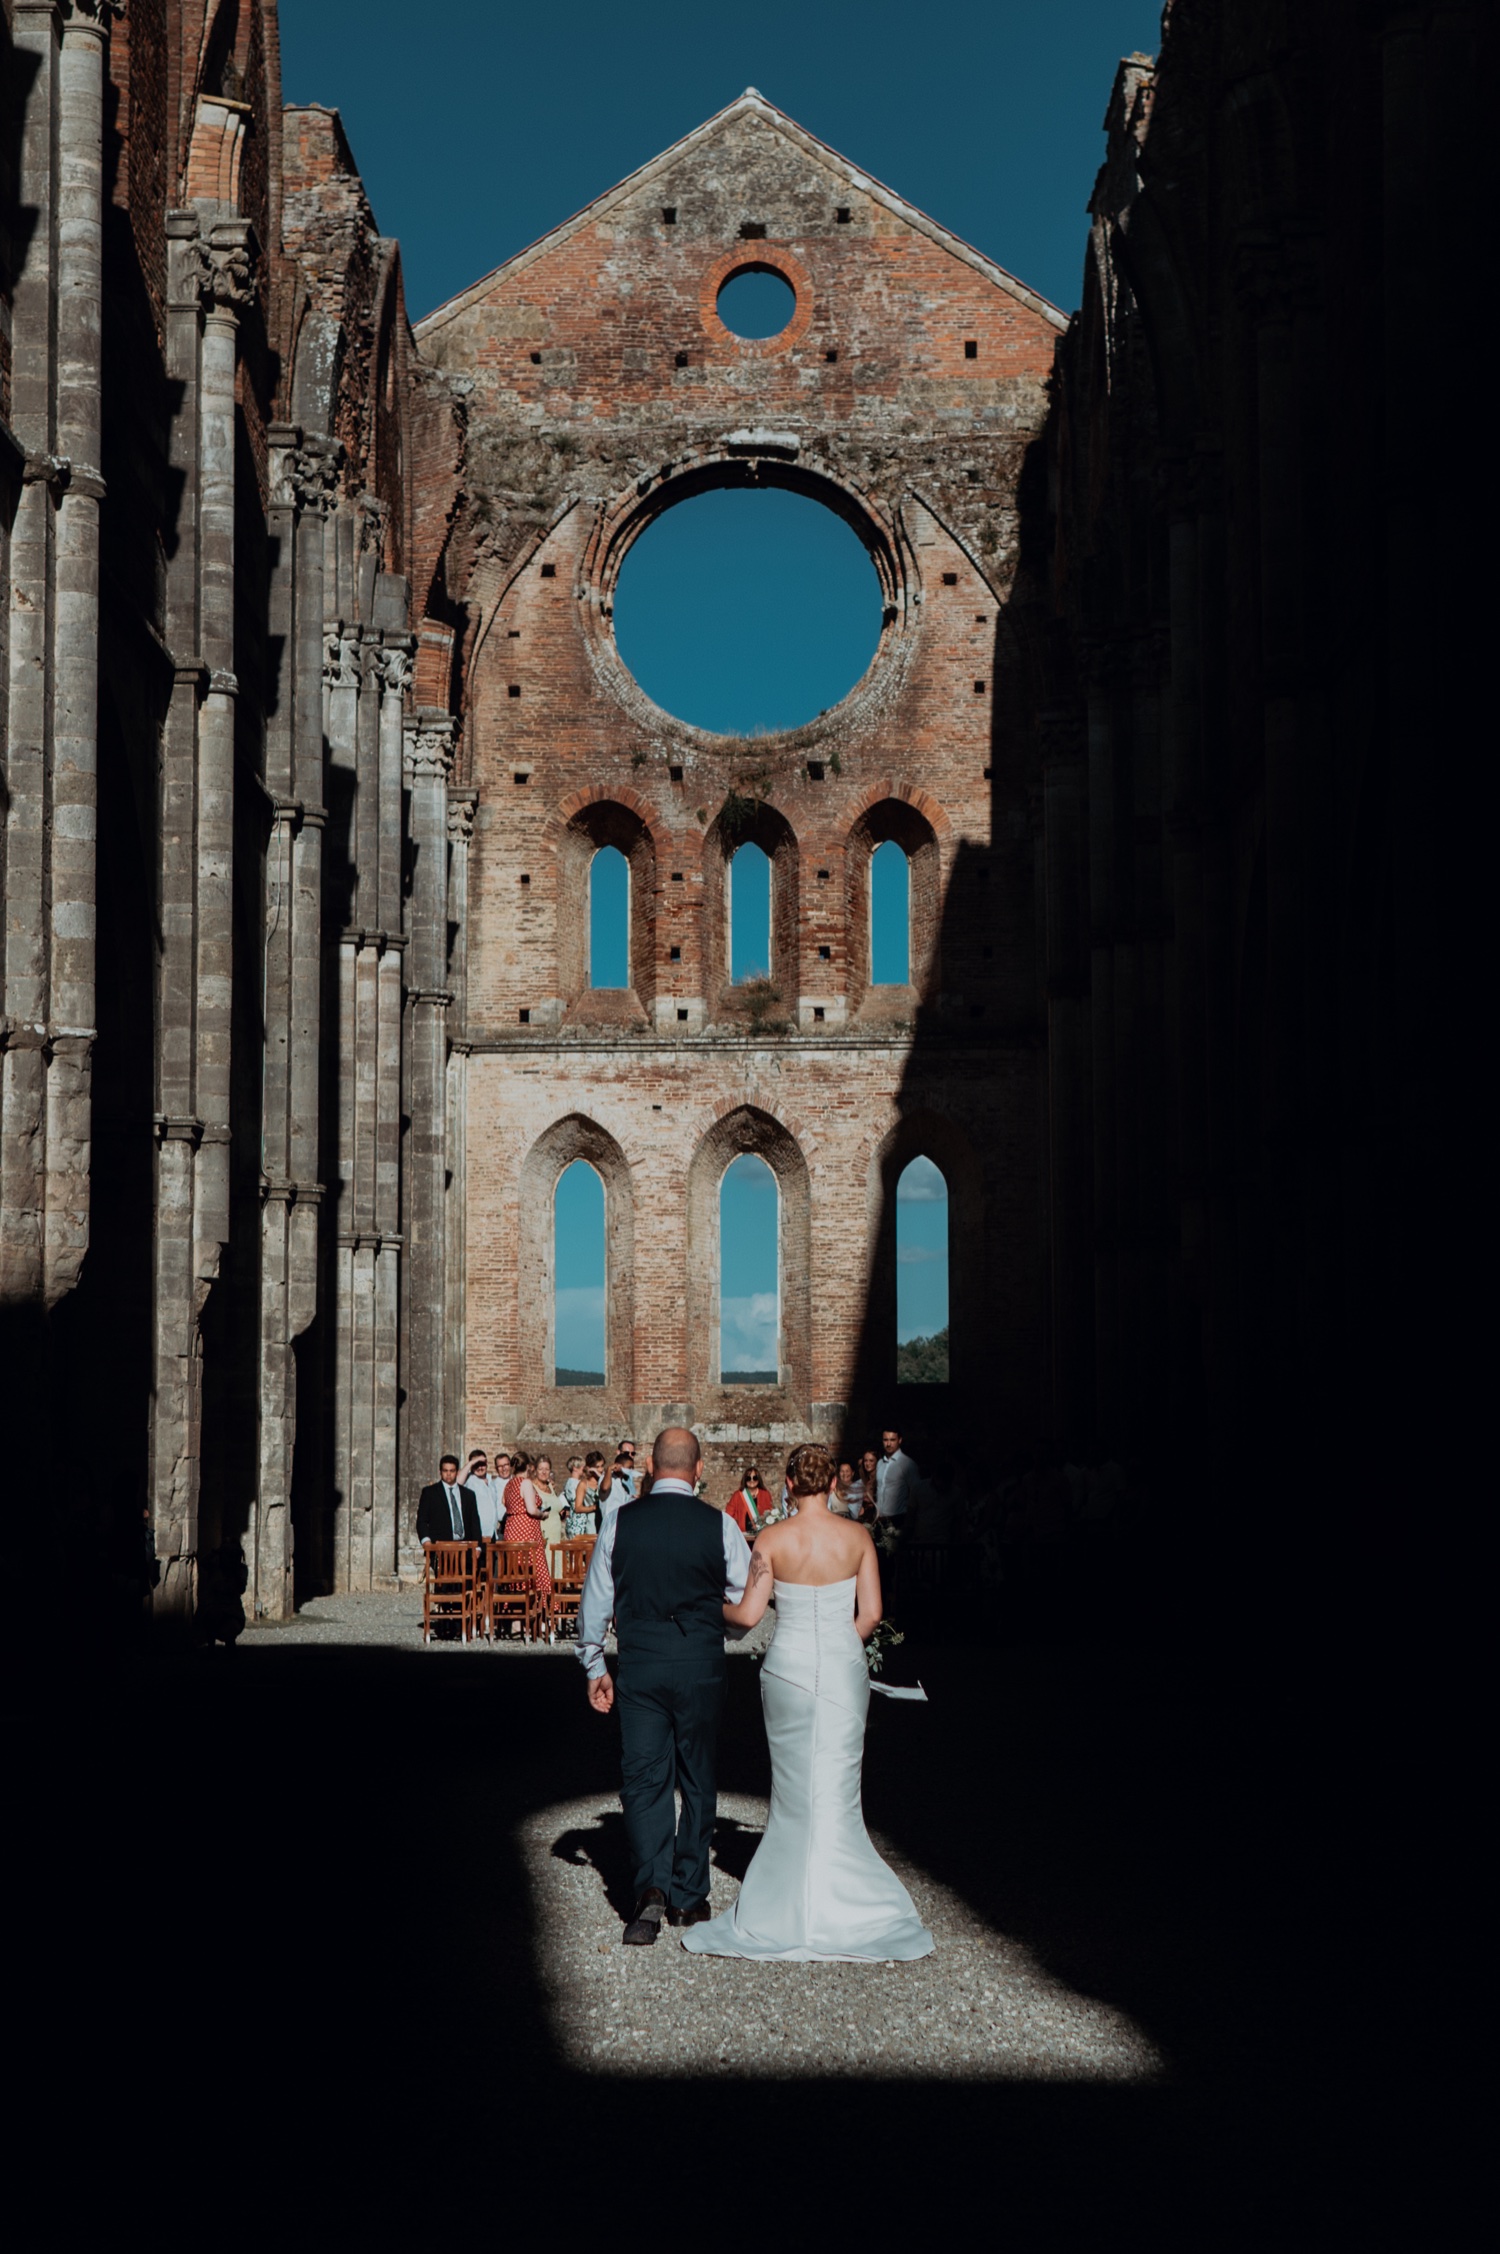 English Romantic Wedding in Tuscany at San Galgano